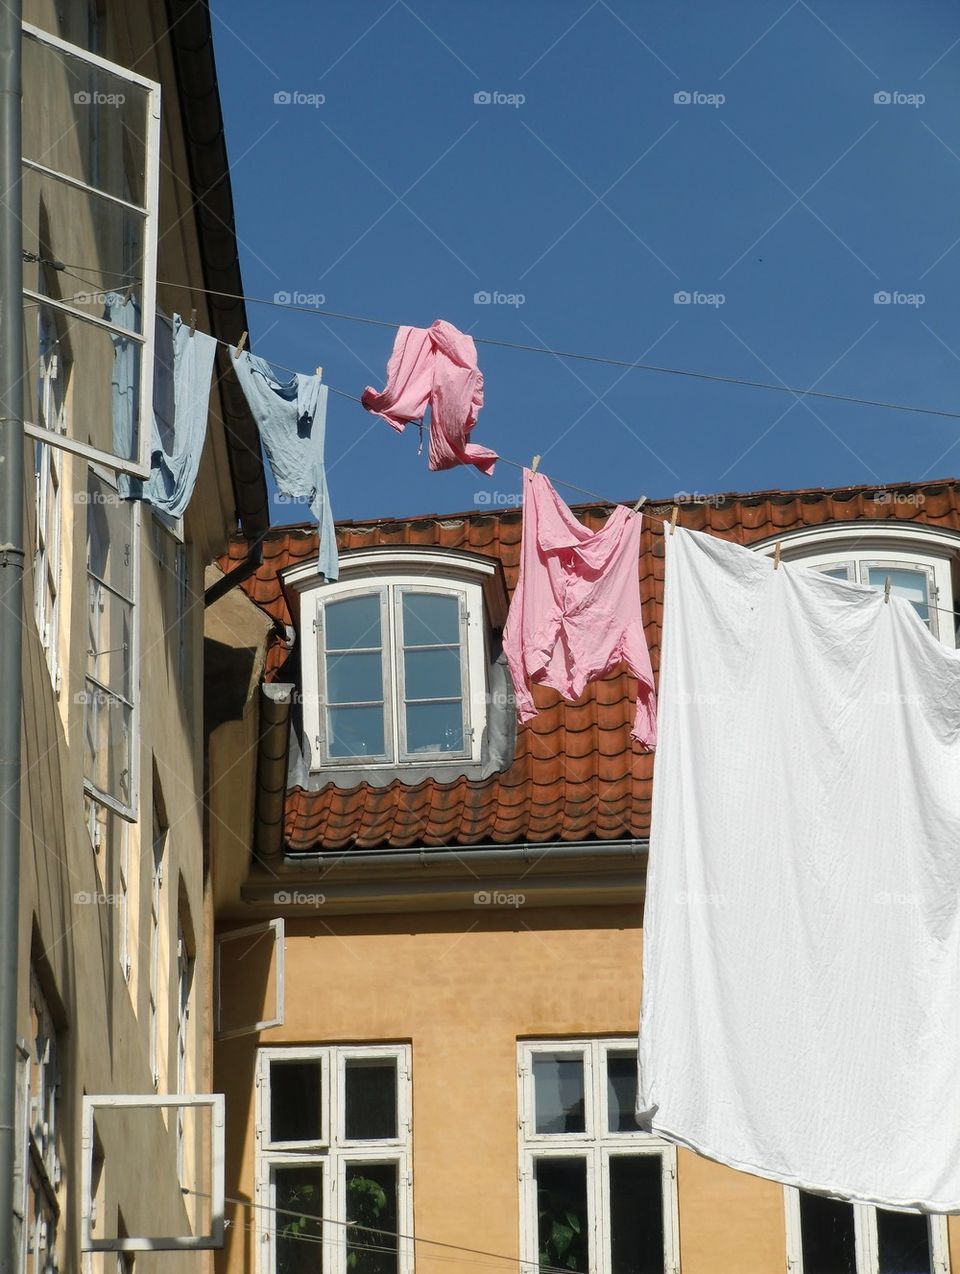 Sunny day for laundry, in Copenhagen Denmark.